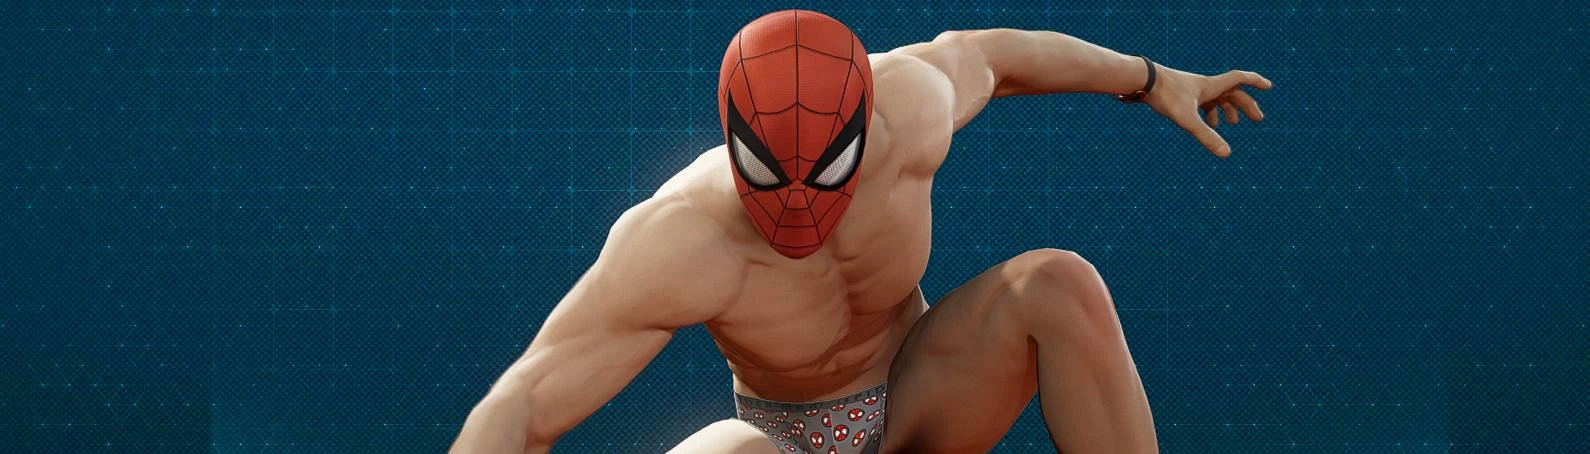 Spider-Man PC Mod Menu (Spidey Menu) by jedijosh920 at Marvel's Spider-Man  Remastered Nexus - Mods and community